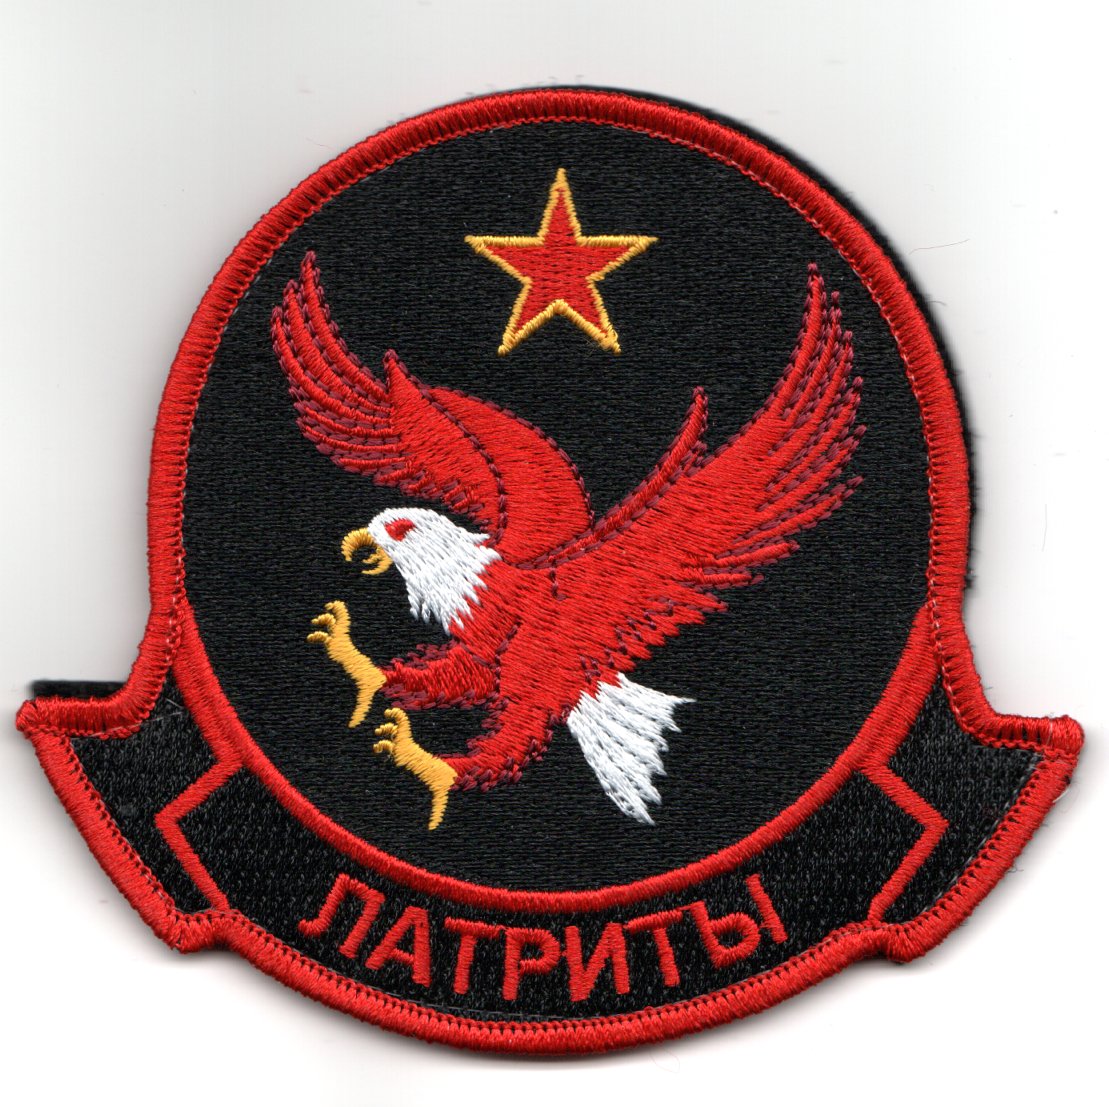 VAQ-140 'RED AIR' Squadron (V)